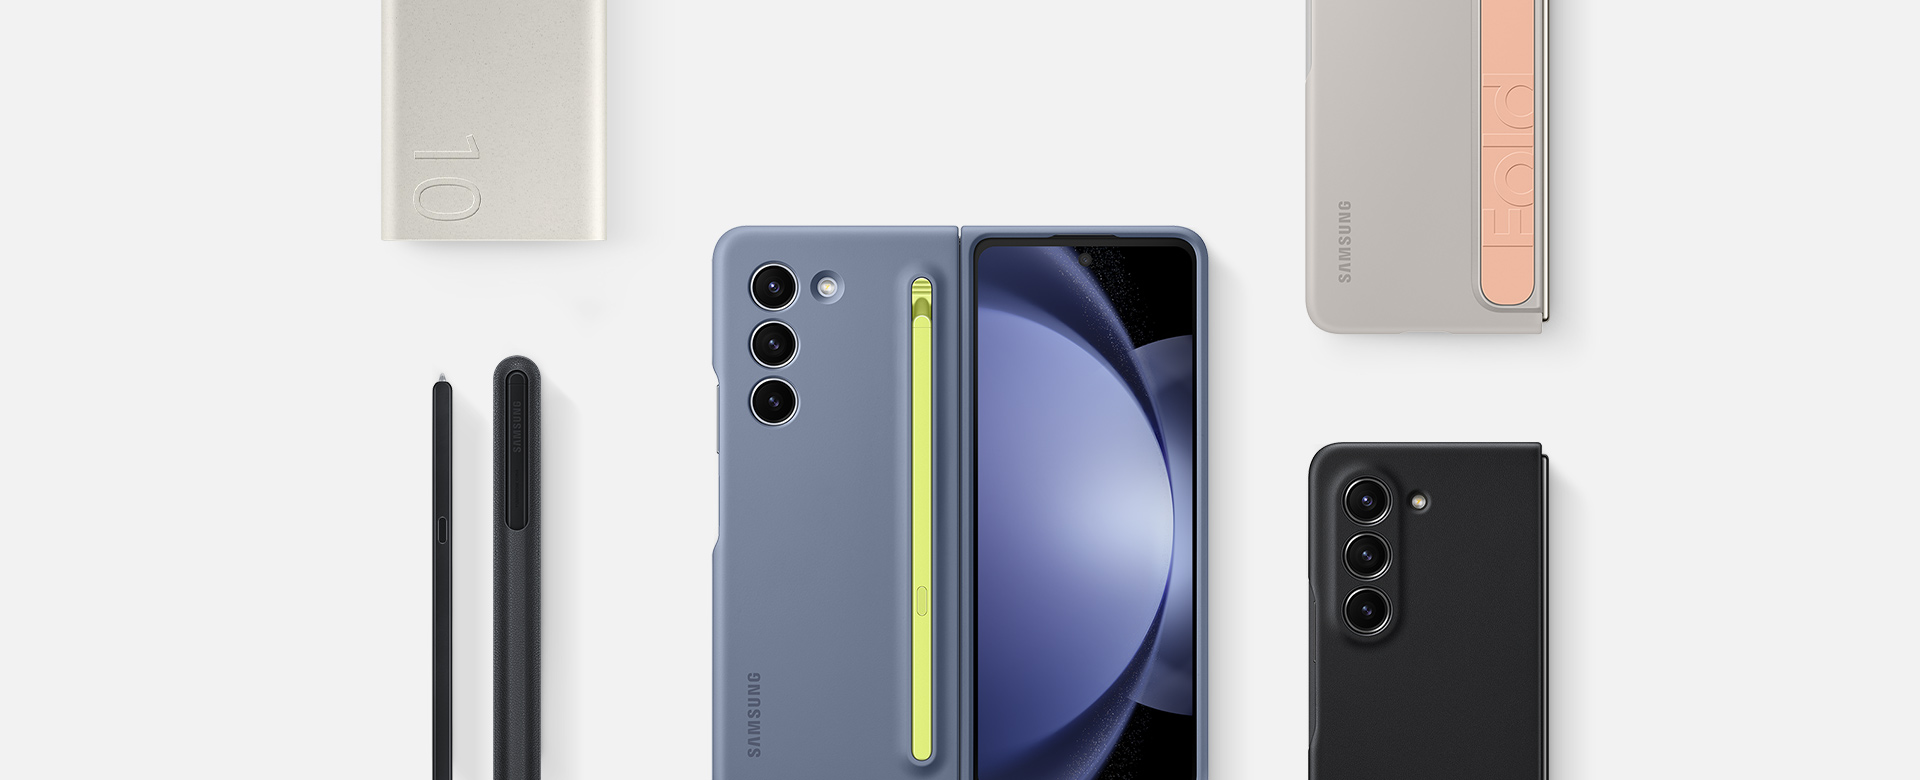 อุปกรณ์เสริมแบบราบกับพื้นผิวสำหรับ Galaxy Z Fold5: ชุดแบตเตอรี่, S Pen Fold Edition สำหรับ Galaxy Z Fold5 และอุปกรณ์สามชิ้นที่ติดกับเคส ได้แก่ เคส Slim S Pen Case สี Icy Blue, เคสแบบมีขาตั้งพร้อมสายรัดในสี Sand และ Eco-Leather Case ในสี Black